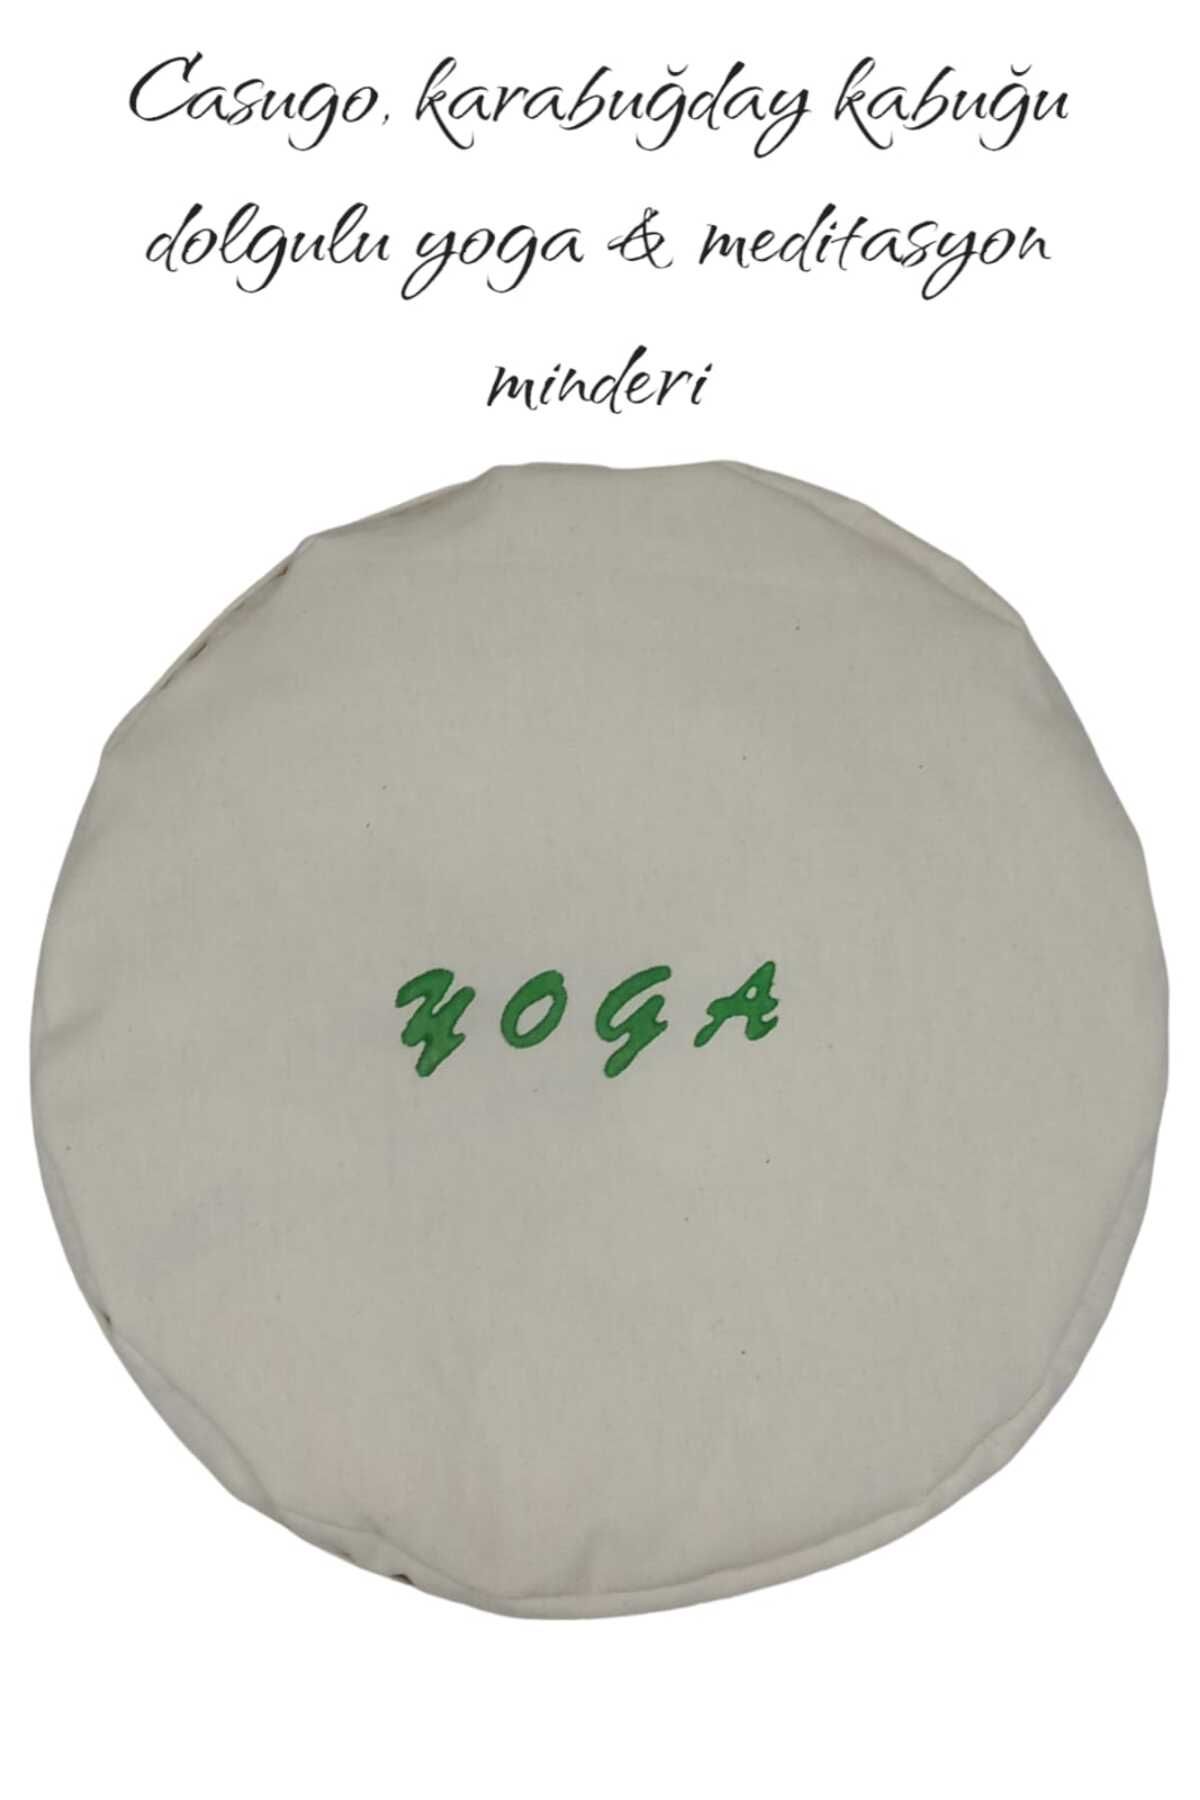 CASUGO Yoga Minderi Meditasyon Minderi - Karabuğday Kabuğu Dolgulu Yeşil Baskılı